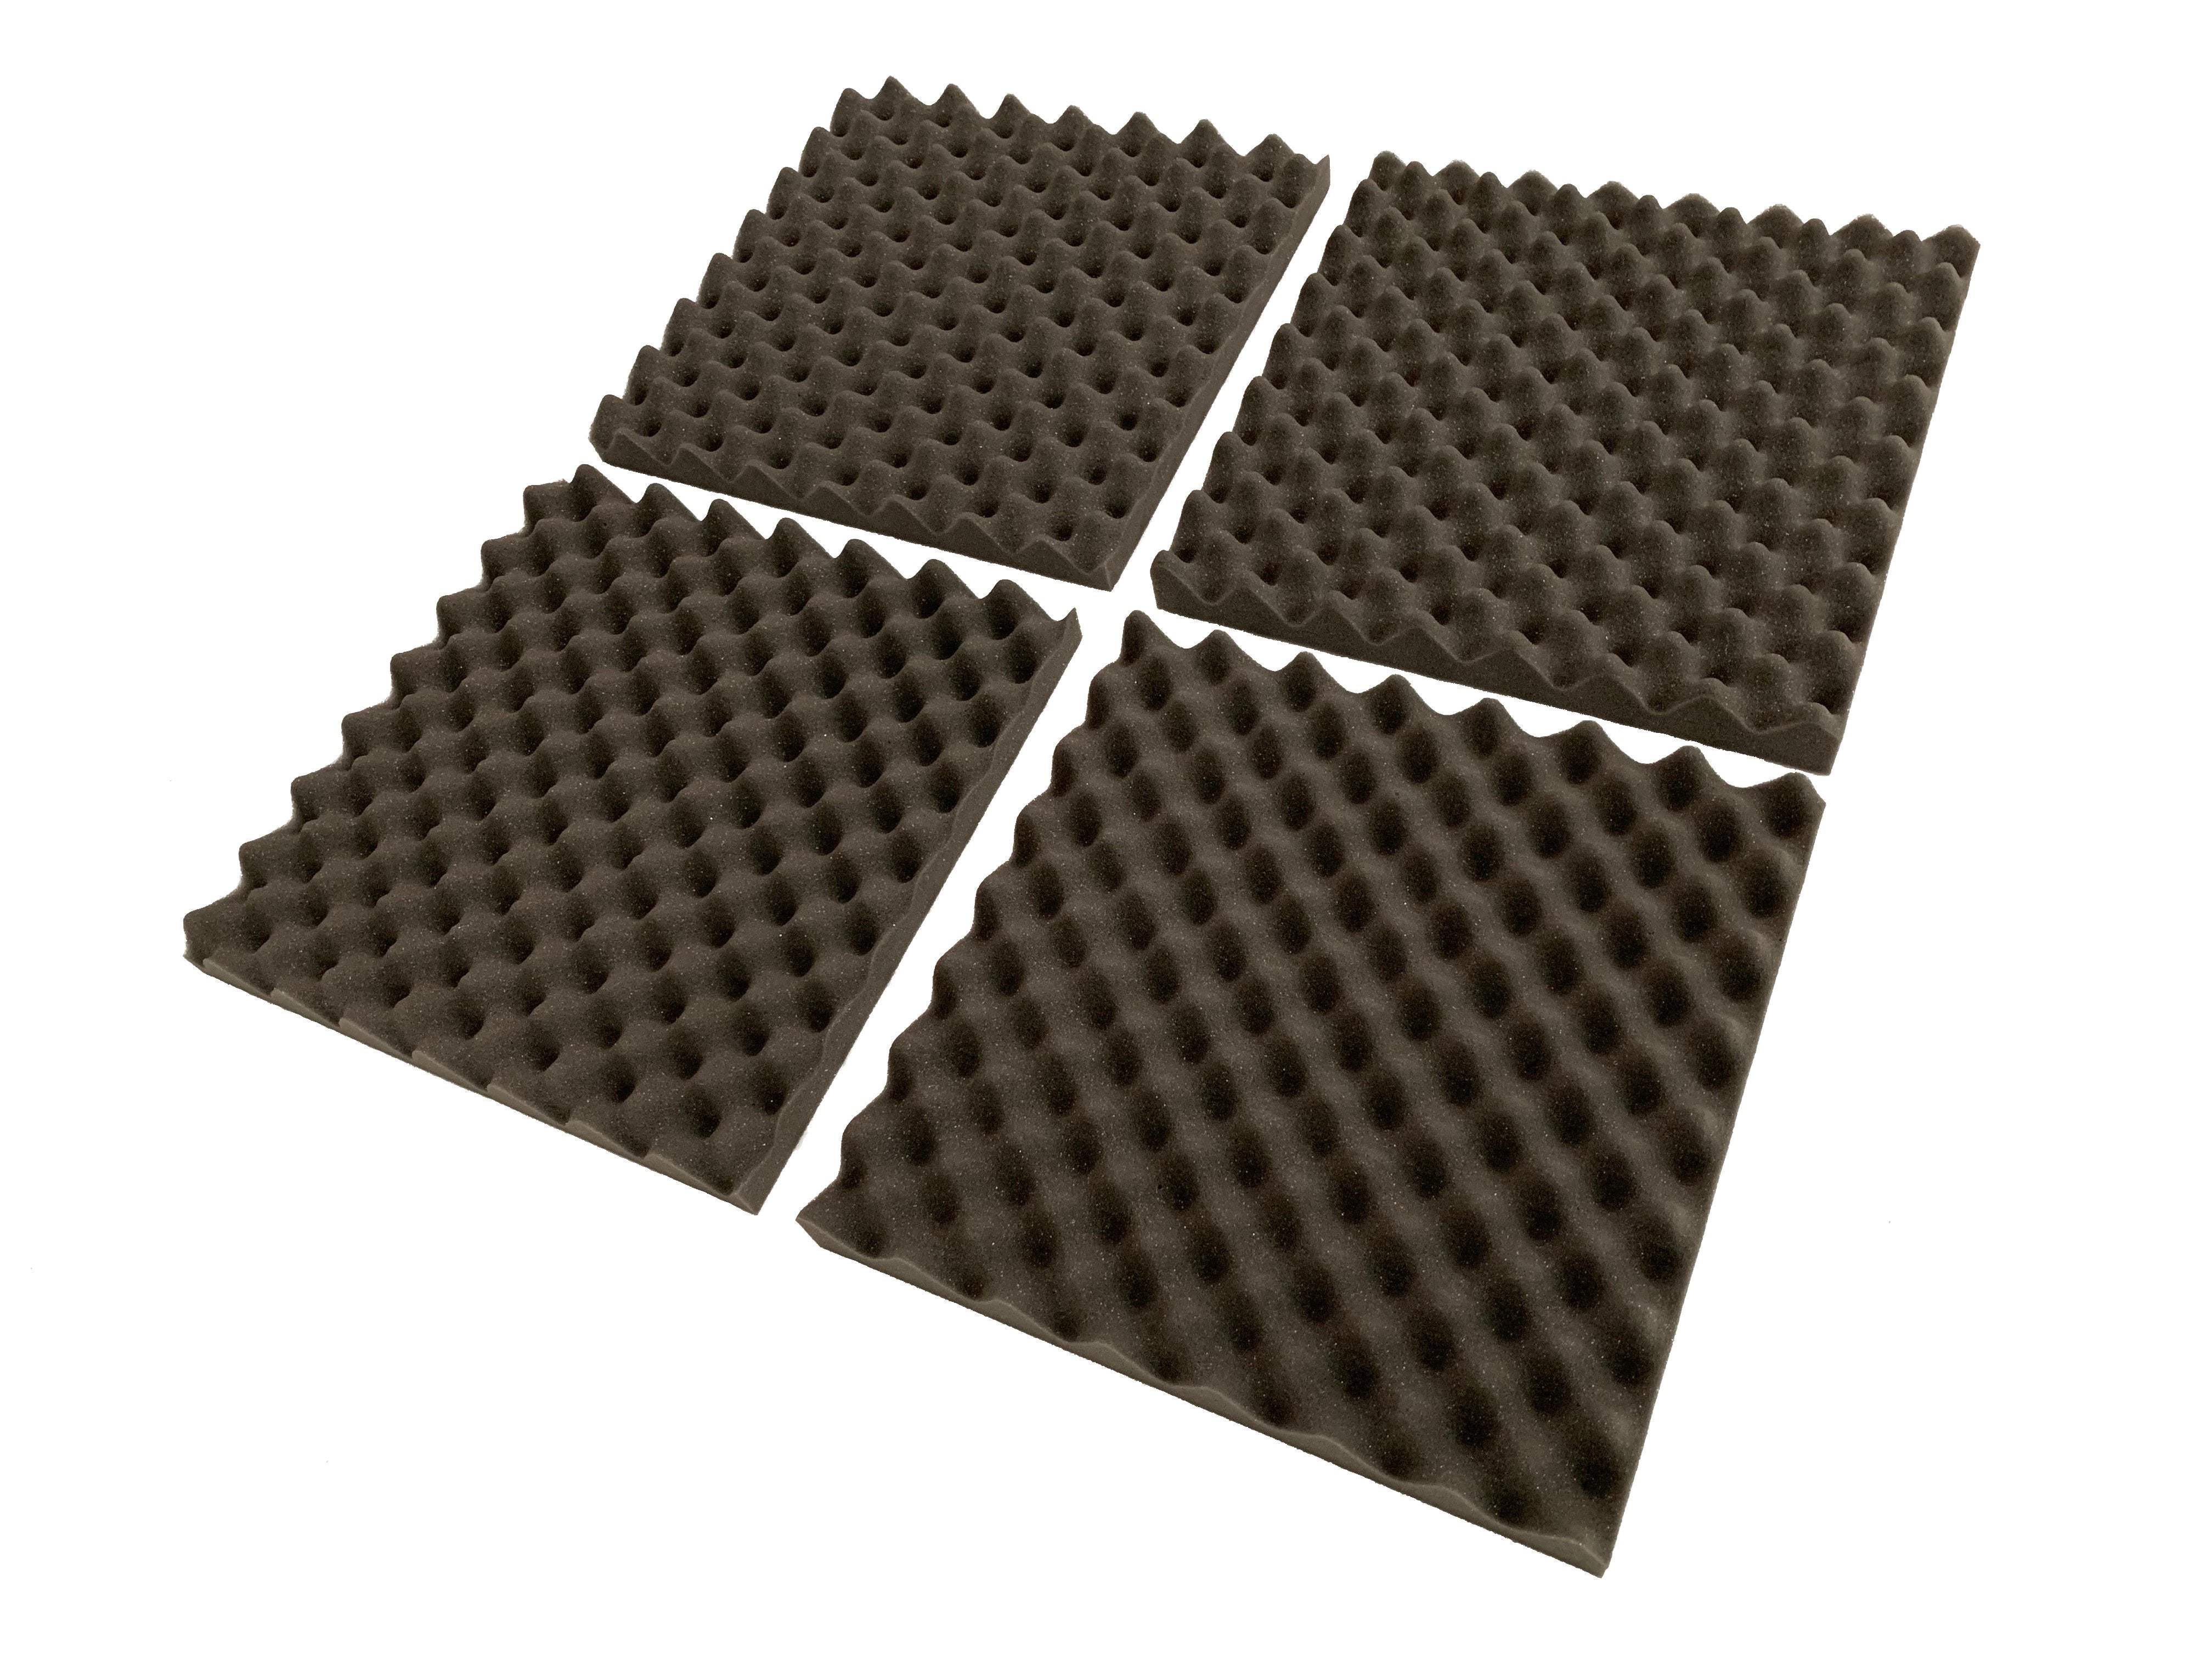 F . A . T . 15" Acoustic Studio Foam Tile Kit - Advanced Acoustics